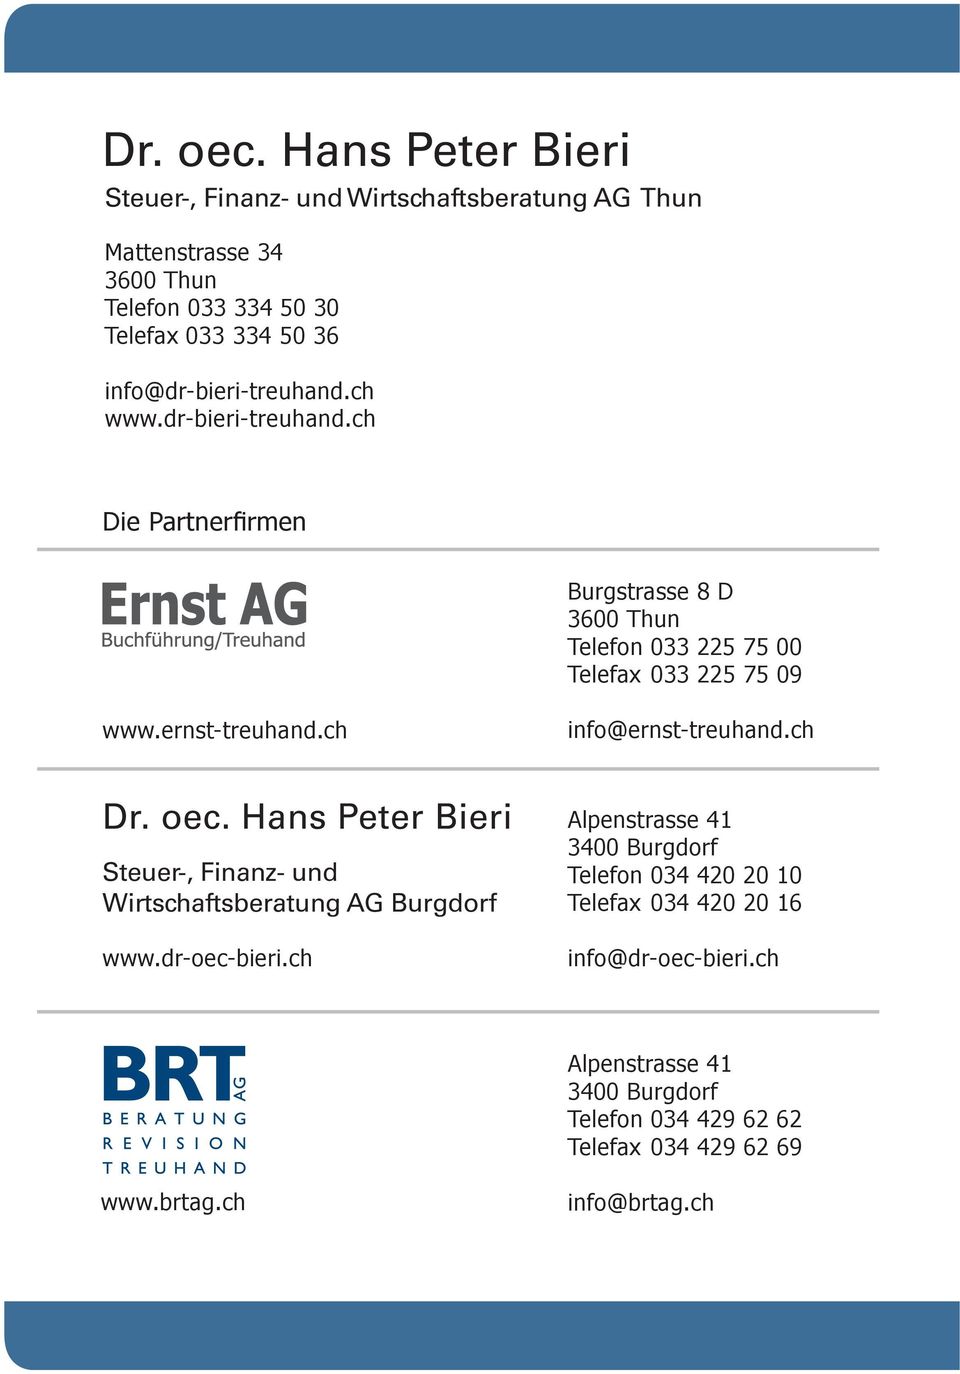 ch info@ernst-treuhand.ch Dr. oec. Hans Peter Bieri Steuer-, Finanz- und Wirtschaftsberatung AG Burgdorf www.dr-oec-bieri.